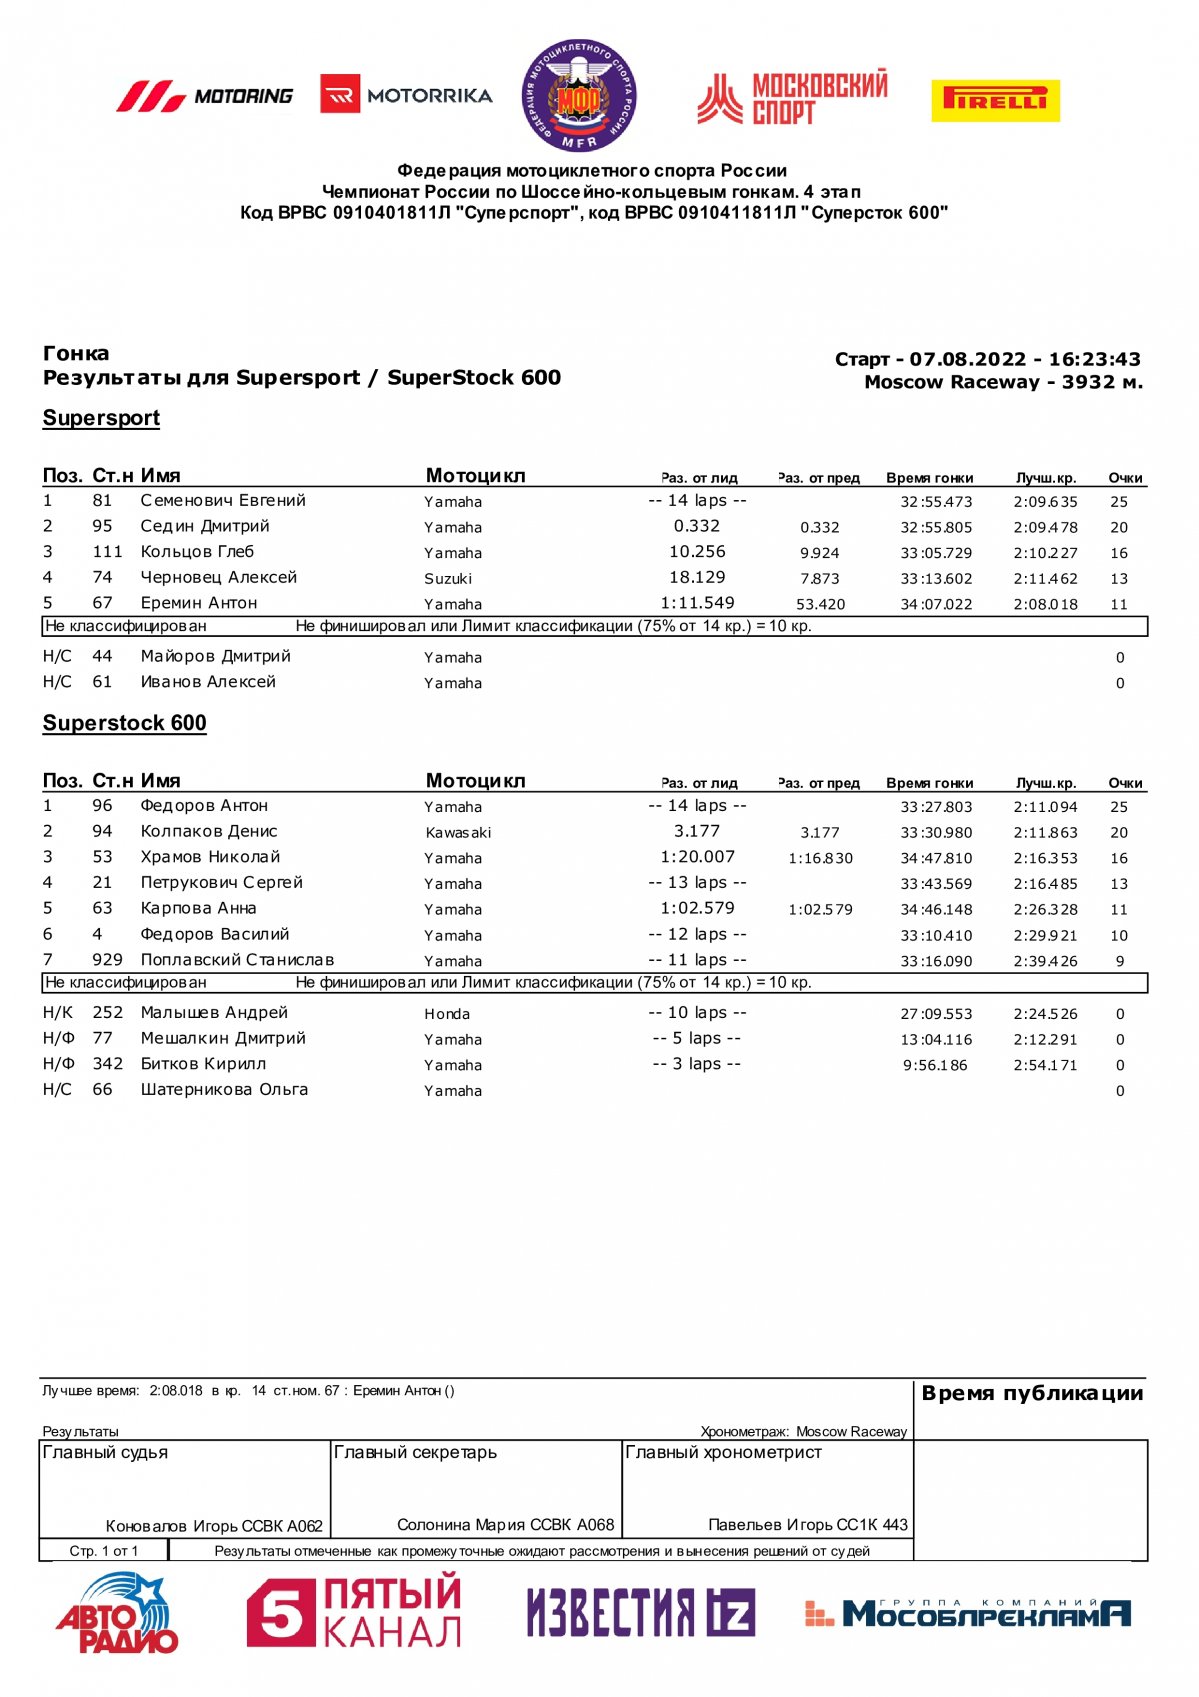 Результаты 4 этапа чемпионата России, класс Суперспорт (7.08.2022)